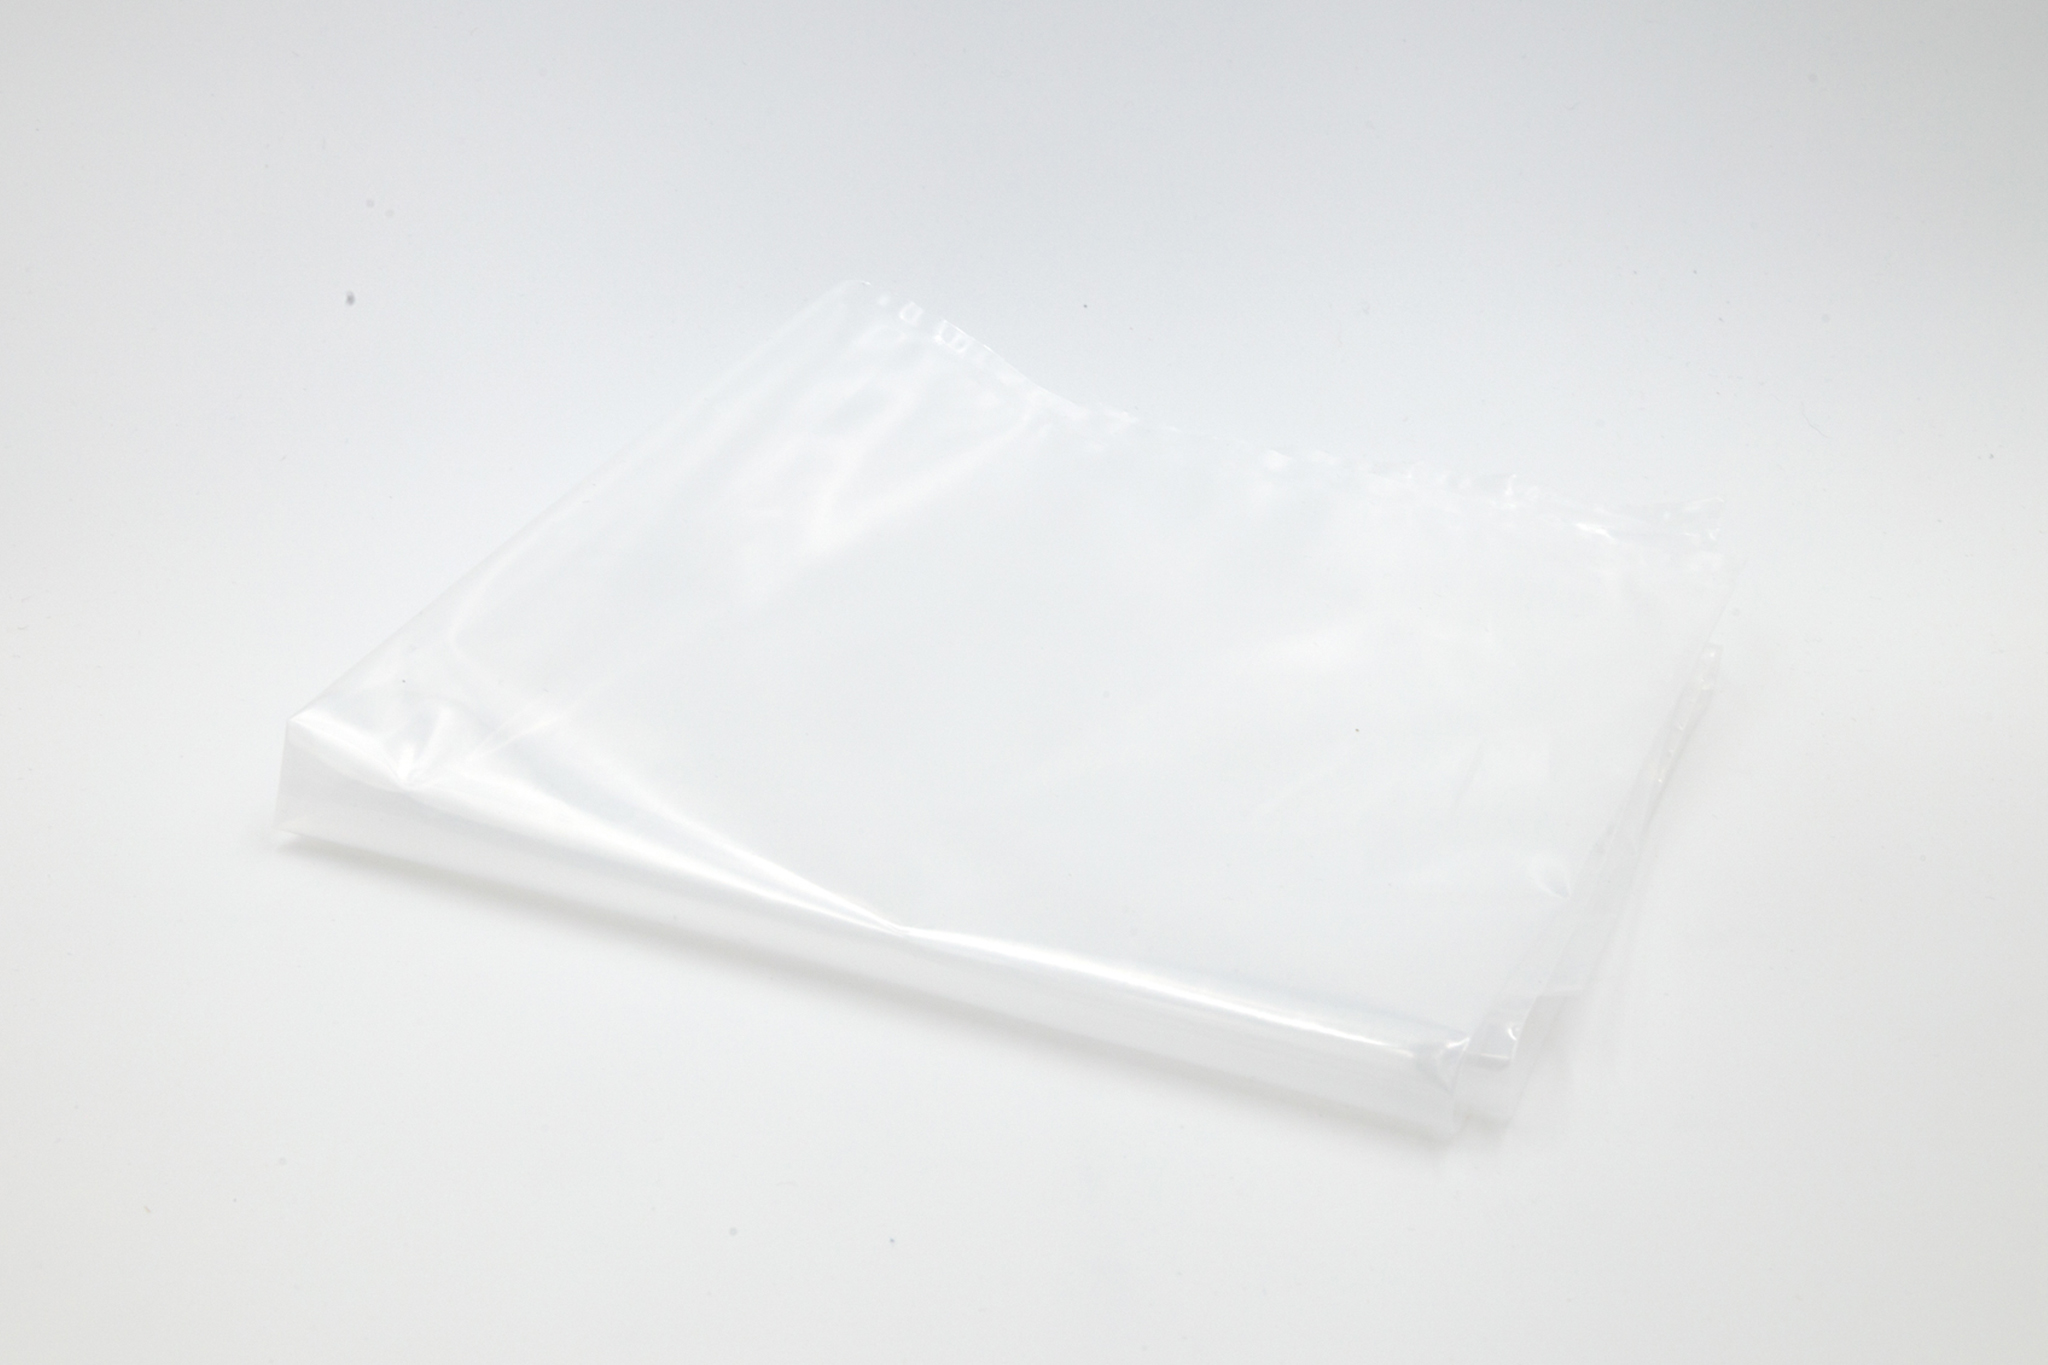 Clear plastic bag